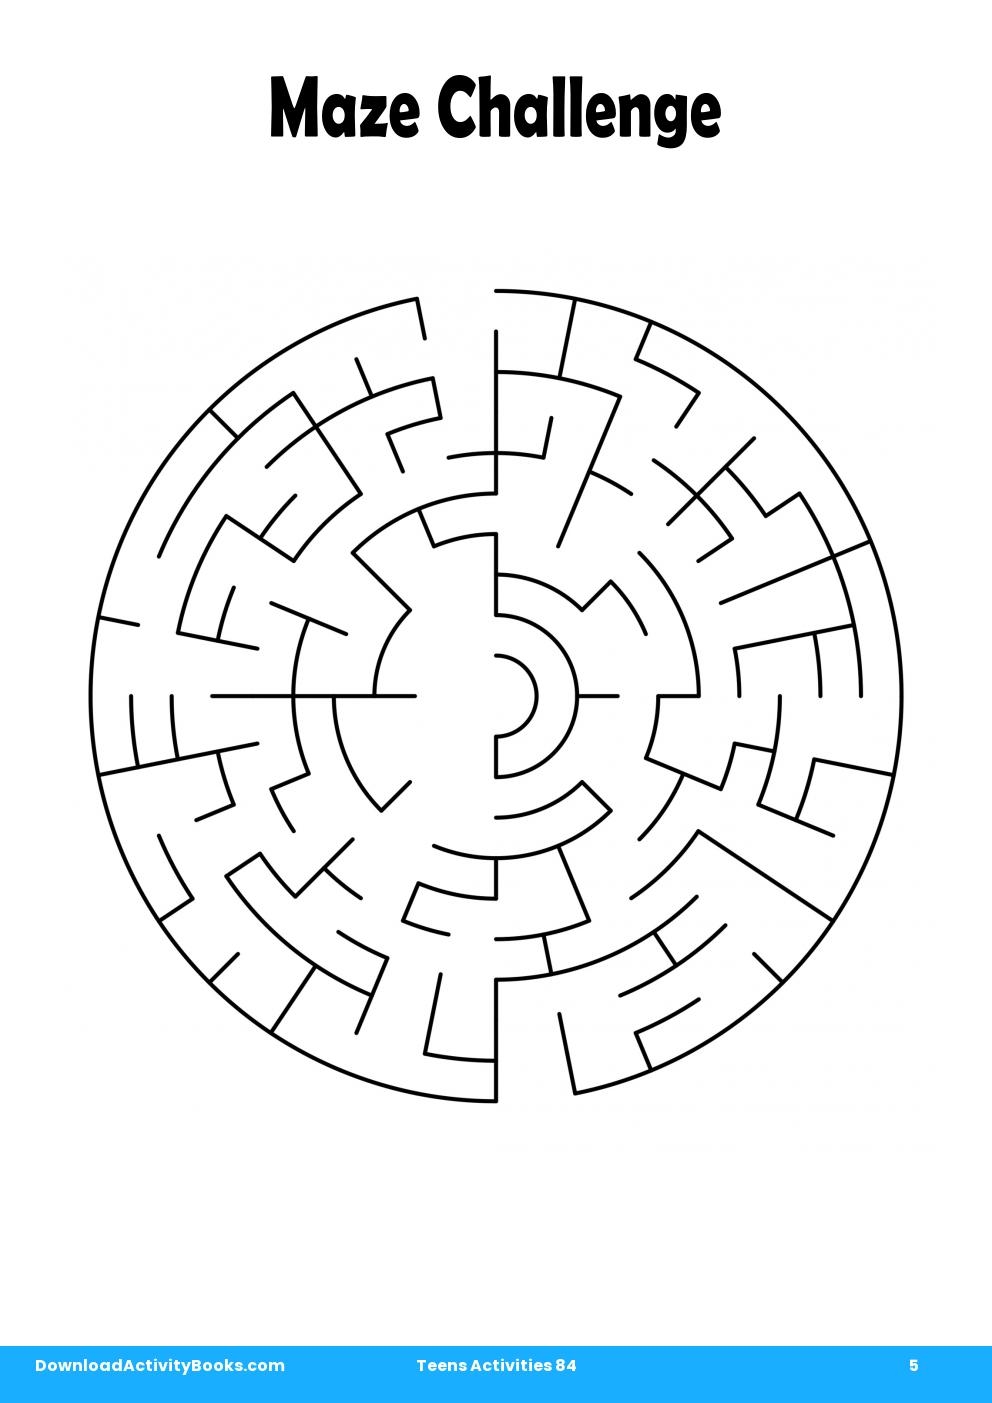 Maze Challenge in Teens Activities 84